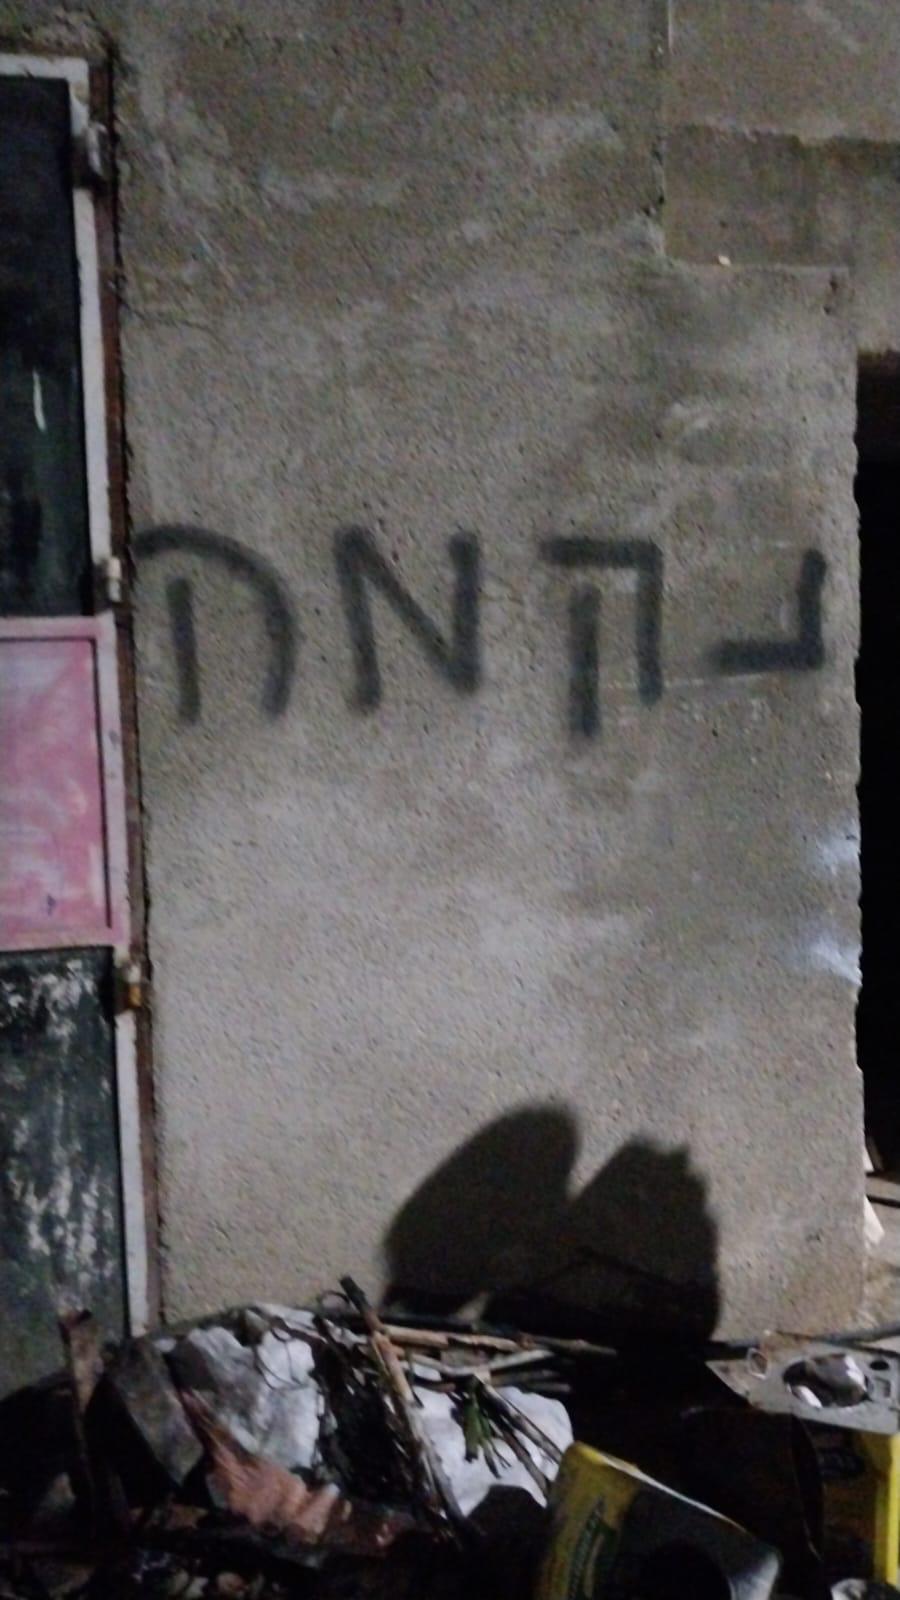 كتب المستوطنون "انتقام" على جدران المواطنين